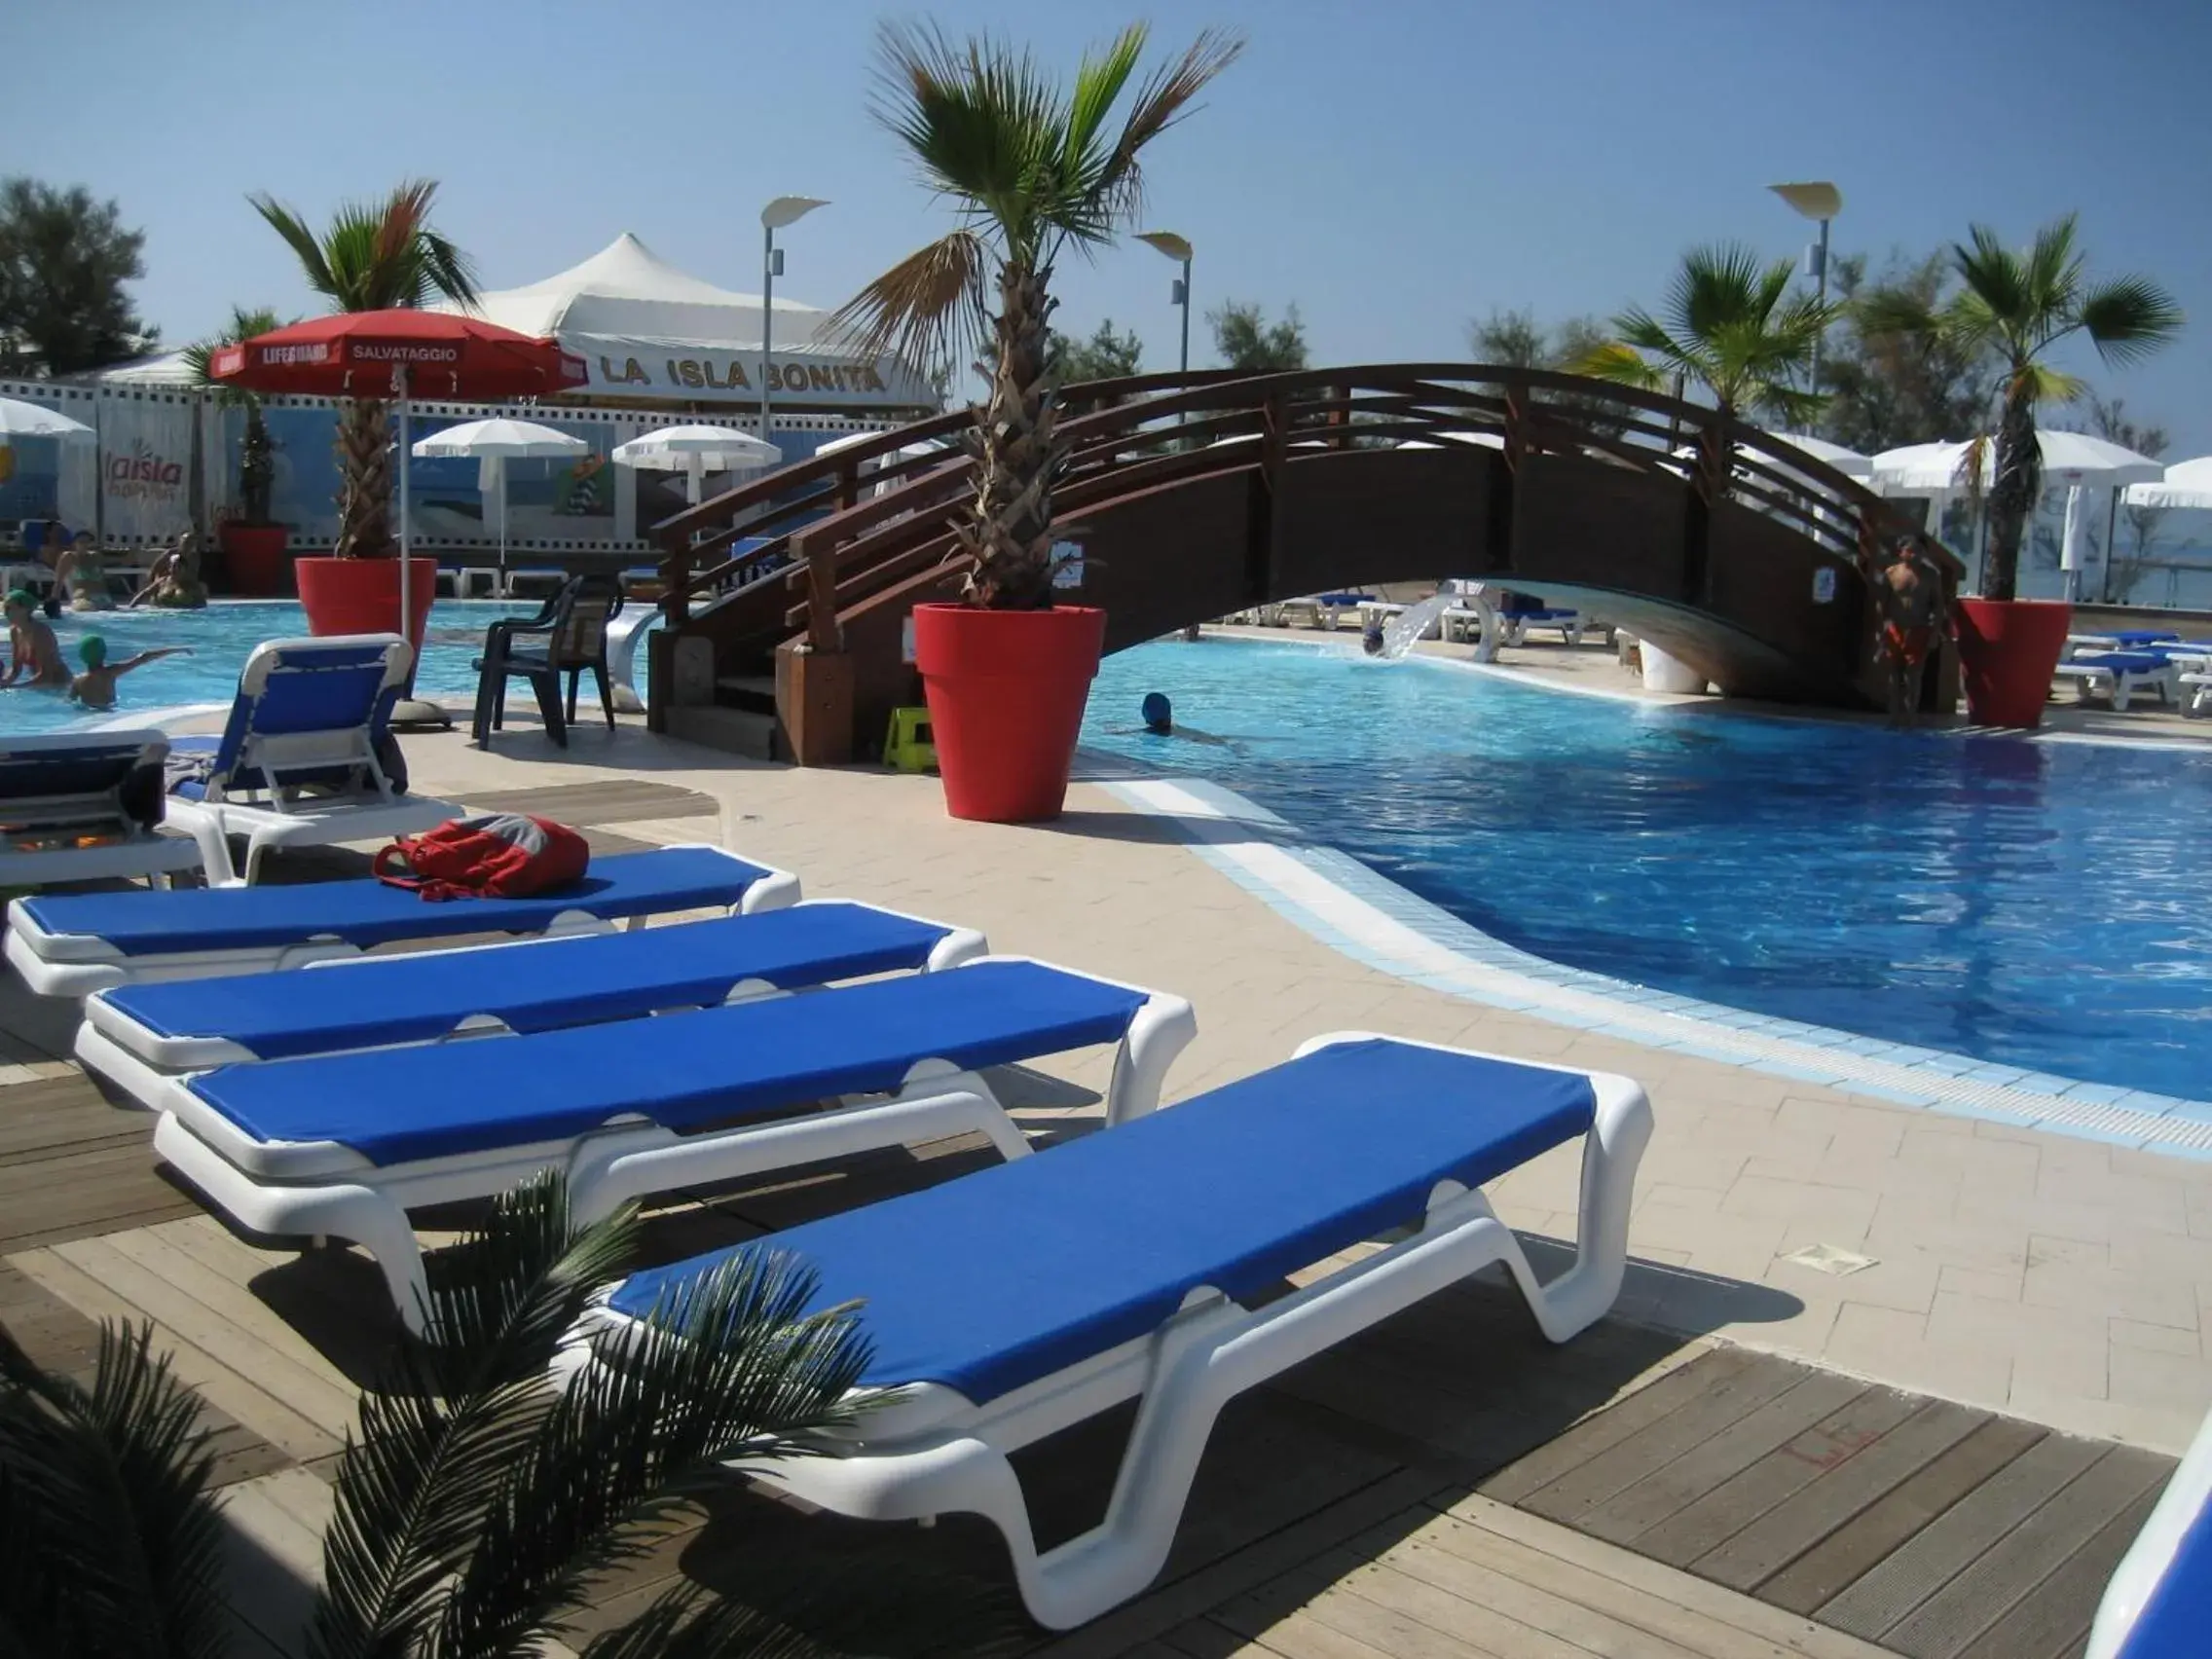 Balcony/Terrace, Swimming Pool in La Isla Resort